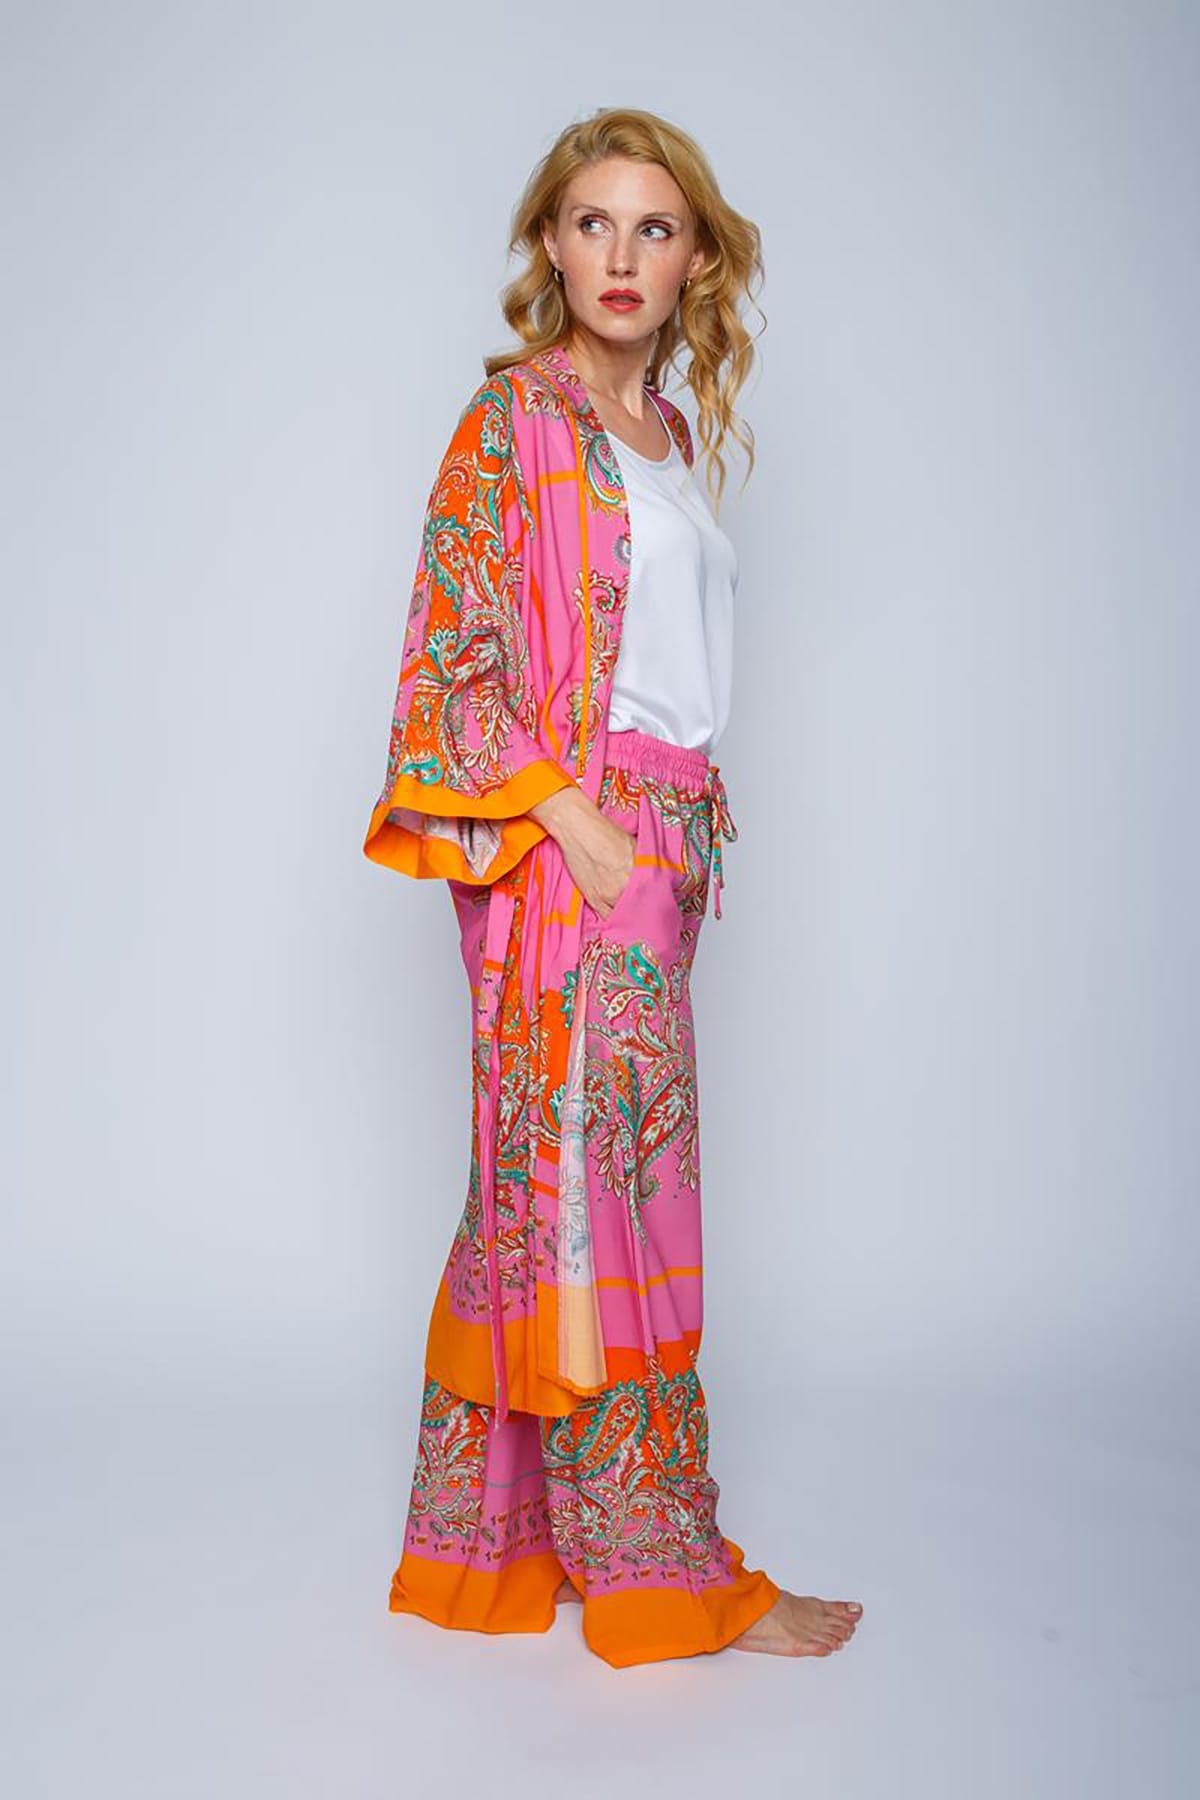 Coole Sommerhose mit elastischem Bund und Paisley Print pink orange scarf Hose Emily van den Bergh 